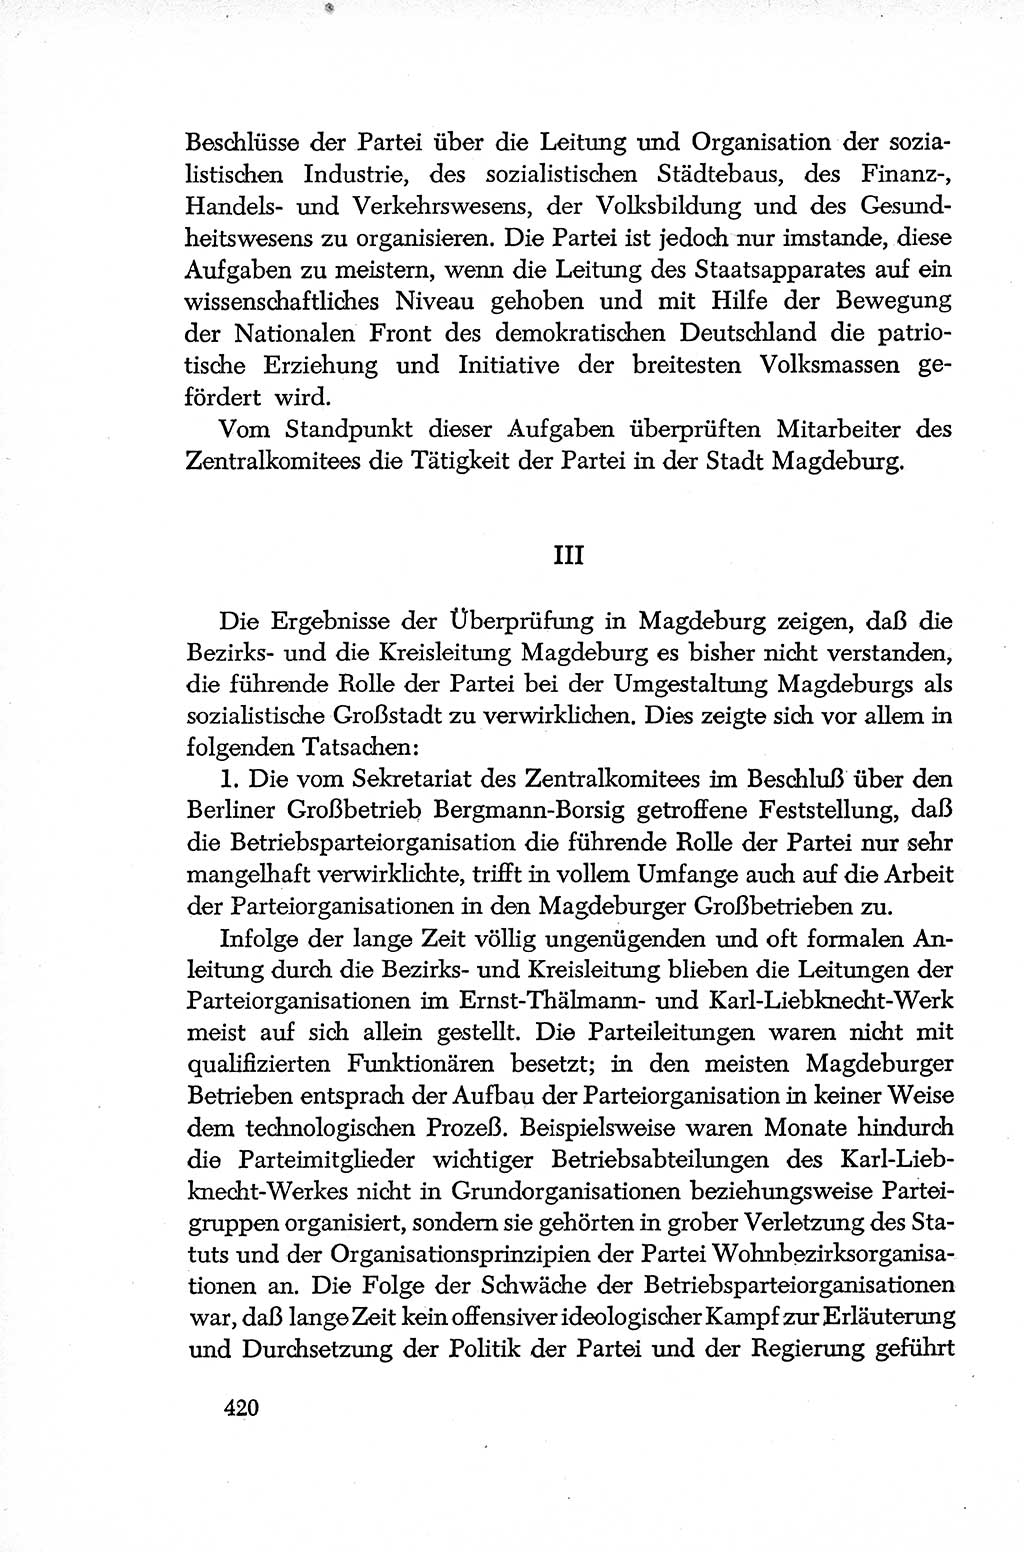 Dokumente der Sozialistischen Einheitspartei Deutschlands (SED) [Deutsche Demokratische Republik (DDR)] 1952-1953, Seite 420 (Dok. SED DDR 1952-1953, S. 420)